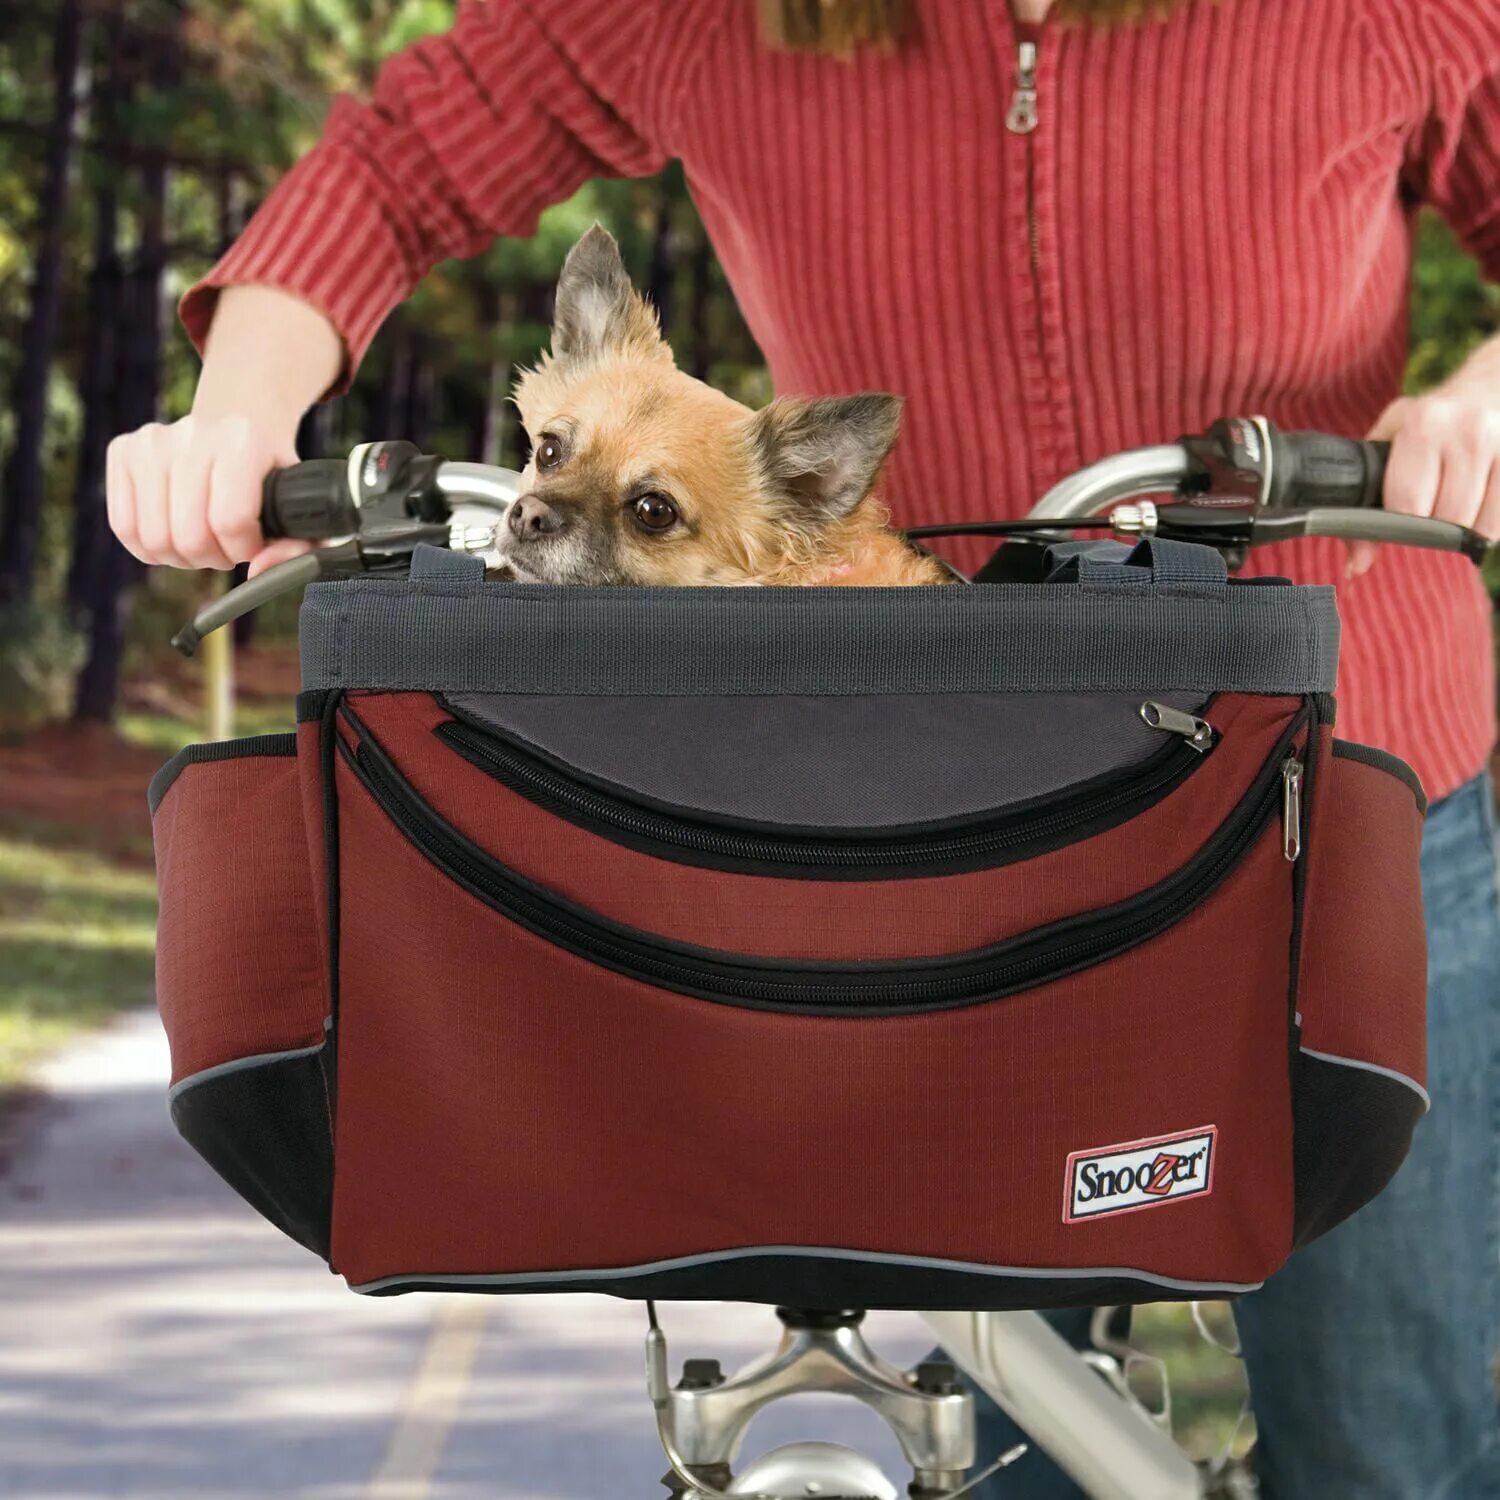 Ride pet. Велосидение для собак buddy Rider. Buddy Rider кресло для собак. Велокорзина для собак Базил Бадди. Велокорзина для собак Ферпласт.